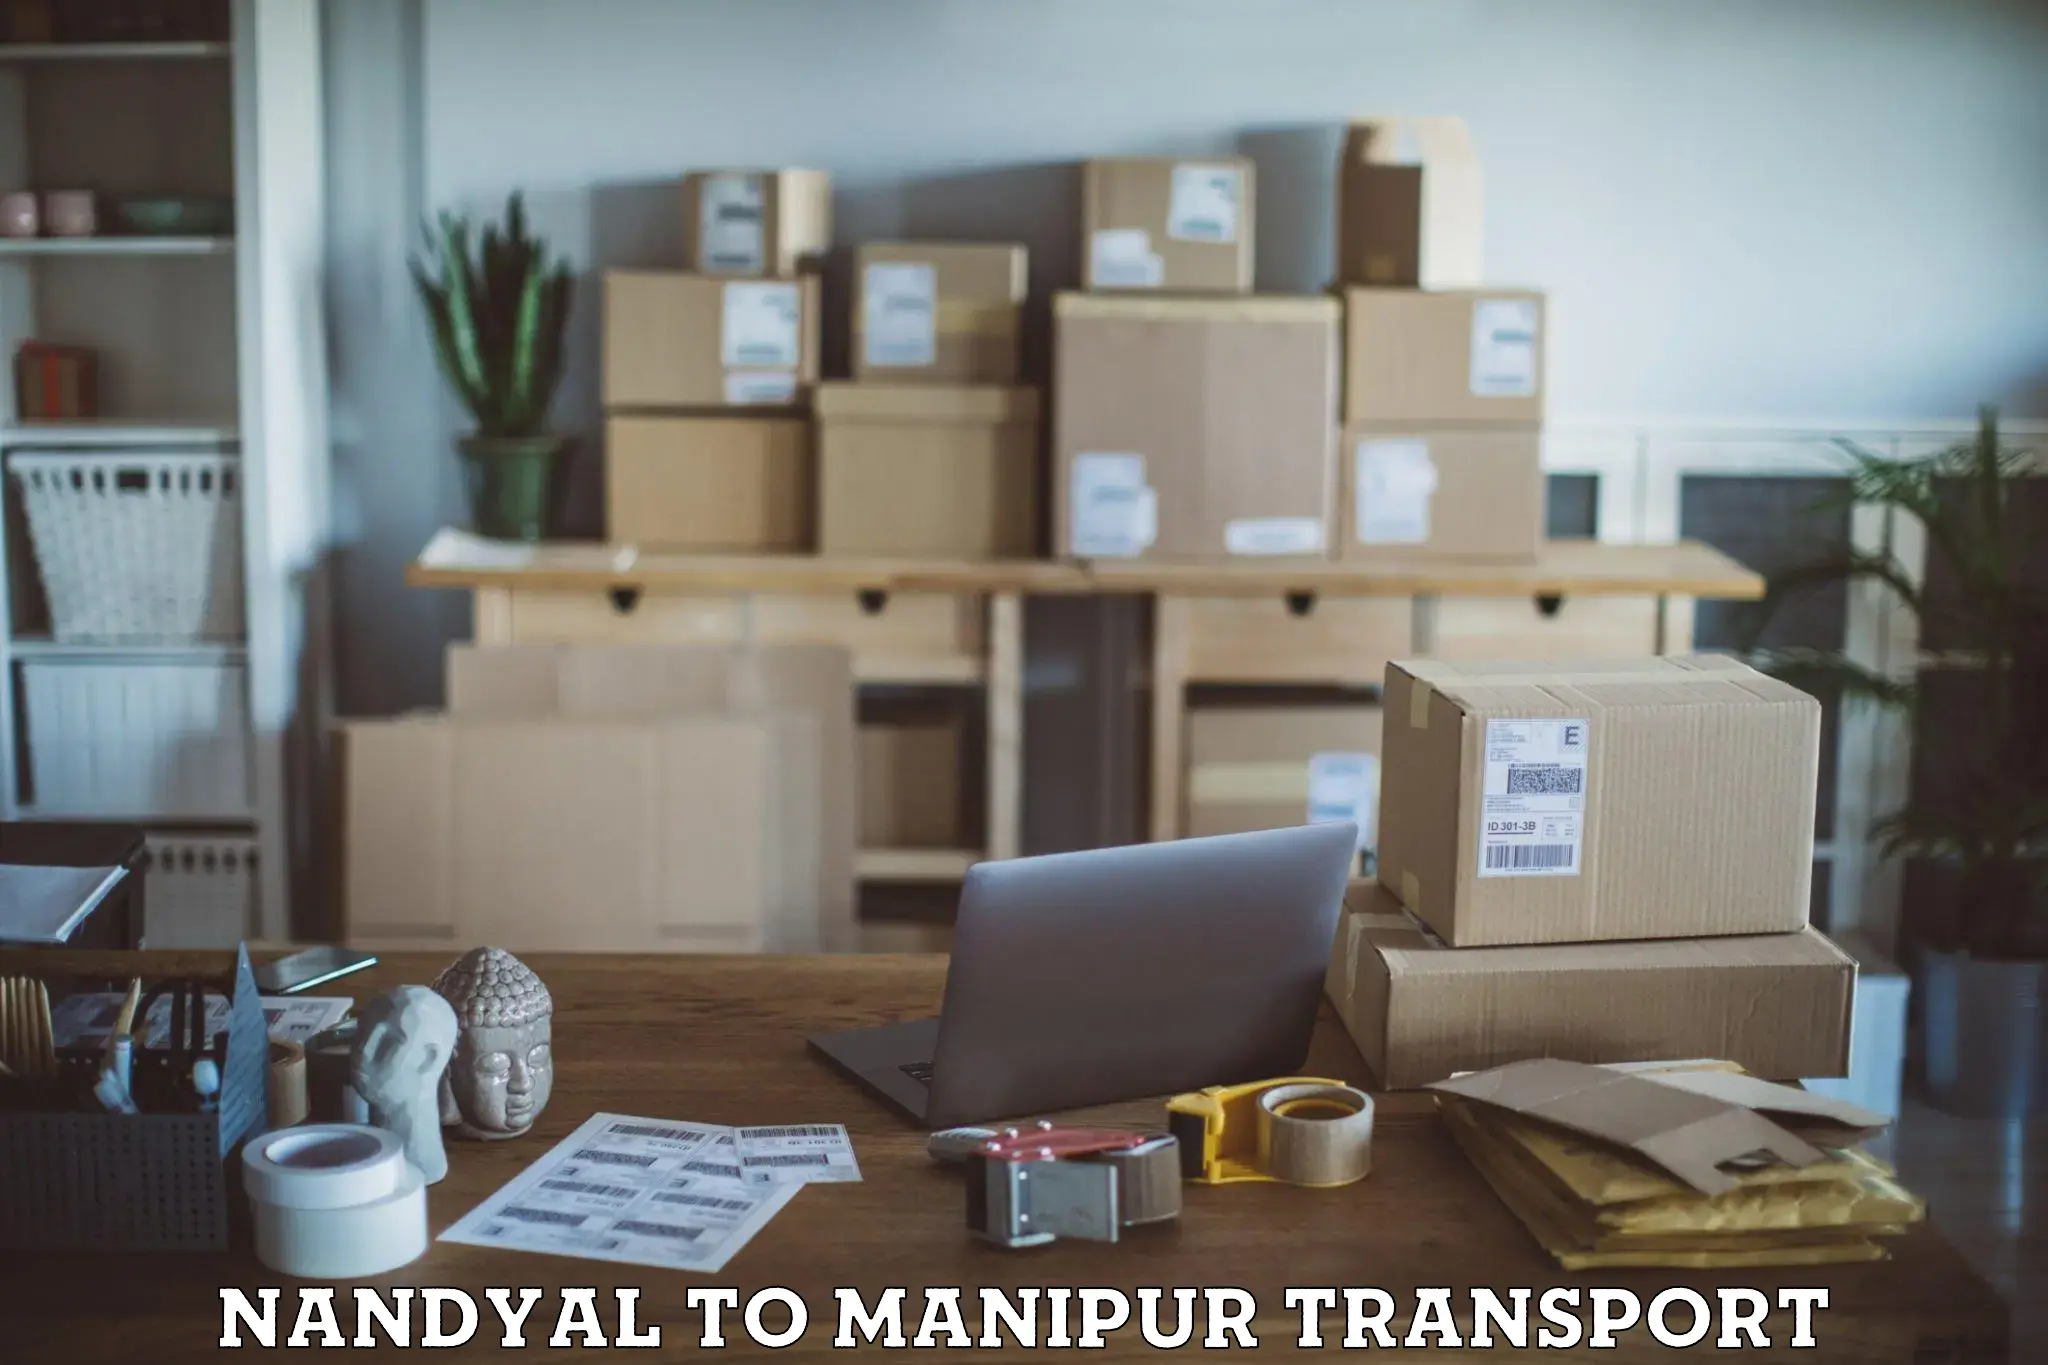 Daily parcel service transport Nandyal to Kakching